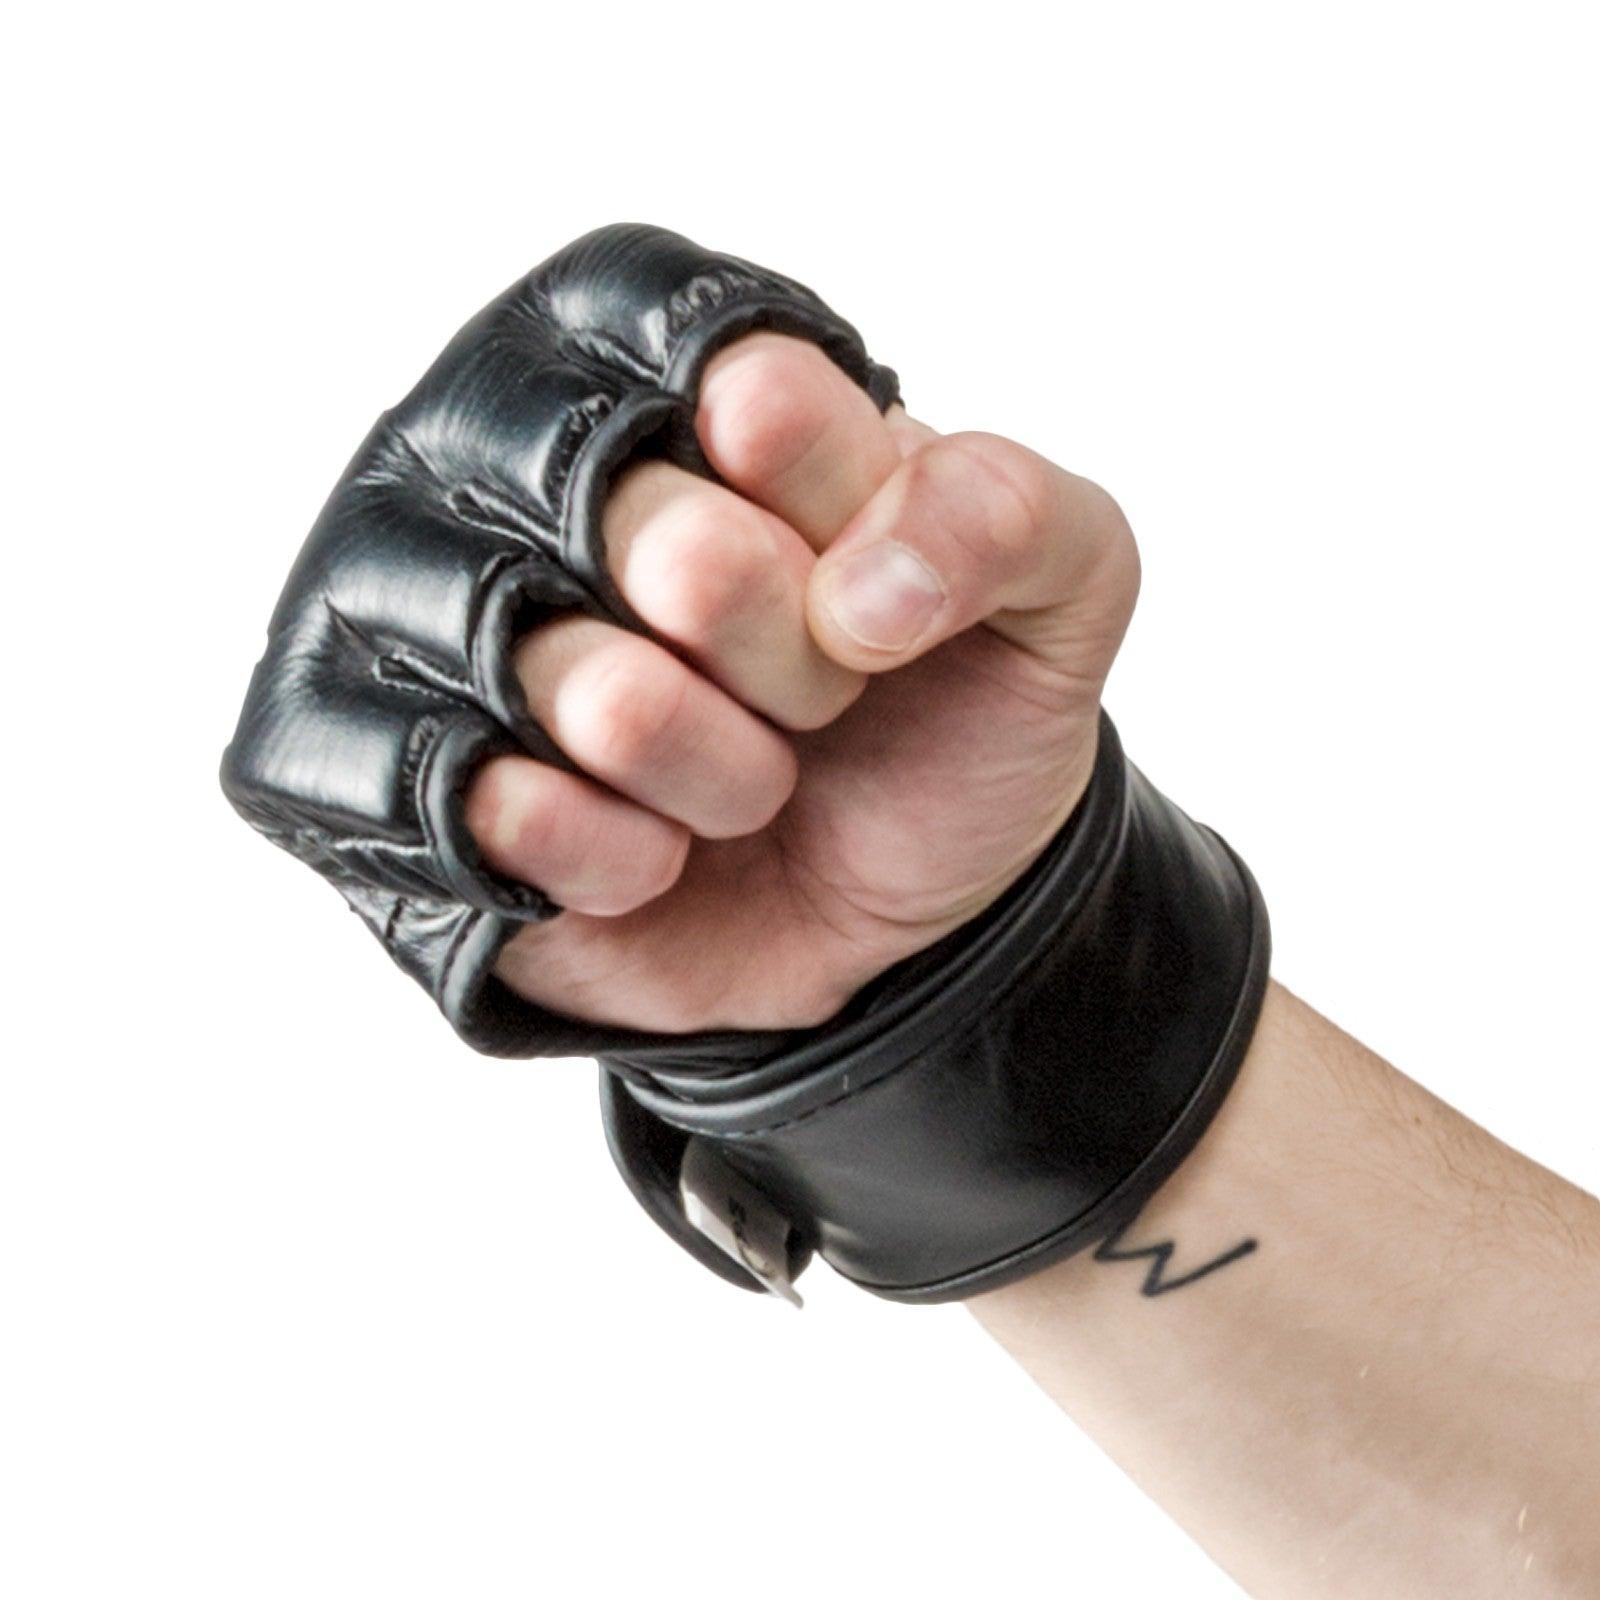 MMA gloves - Crest - PFG